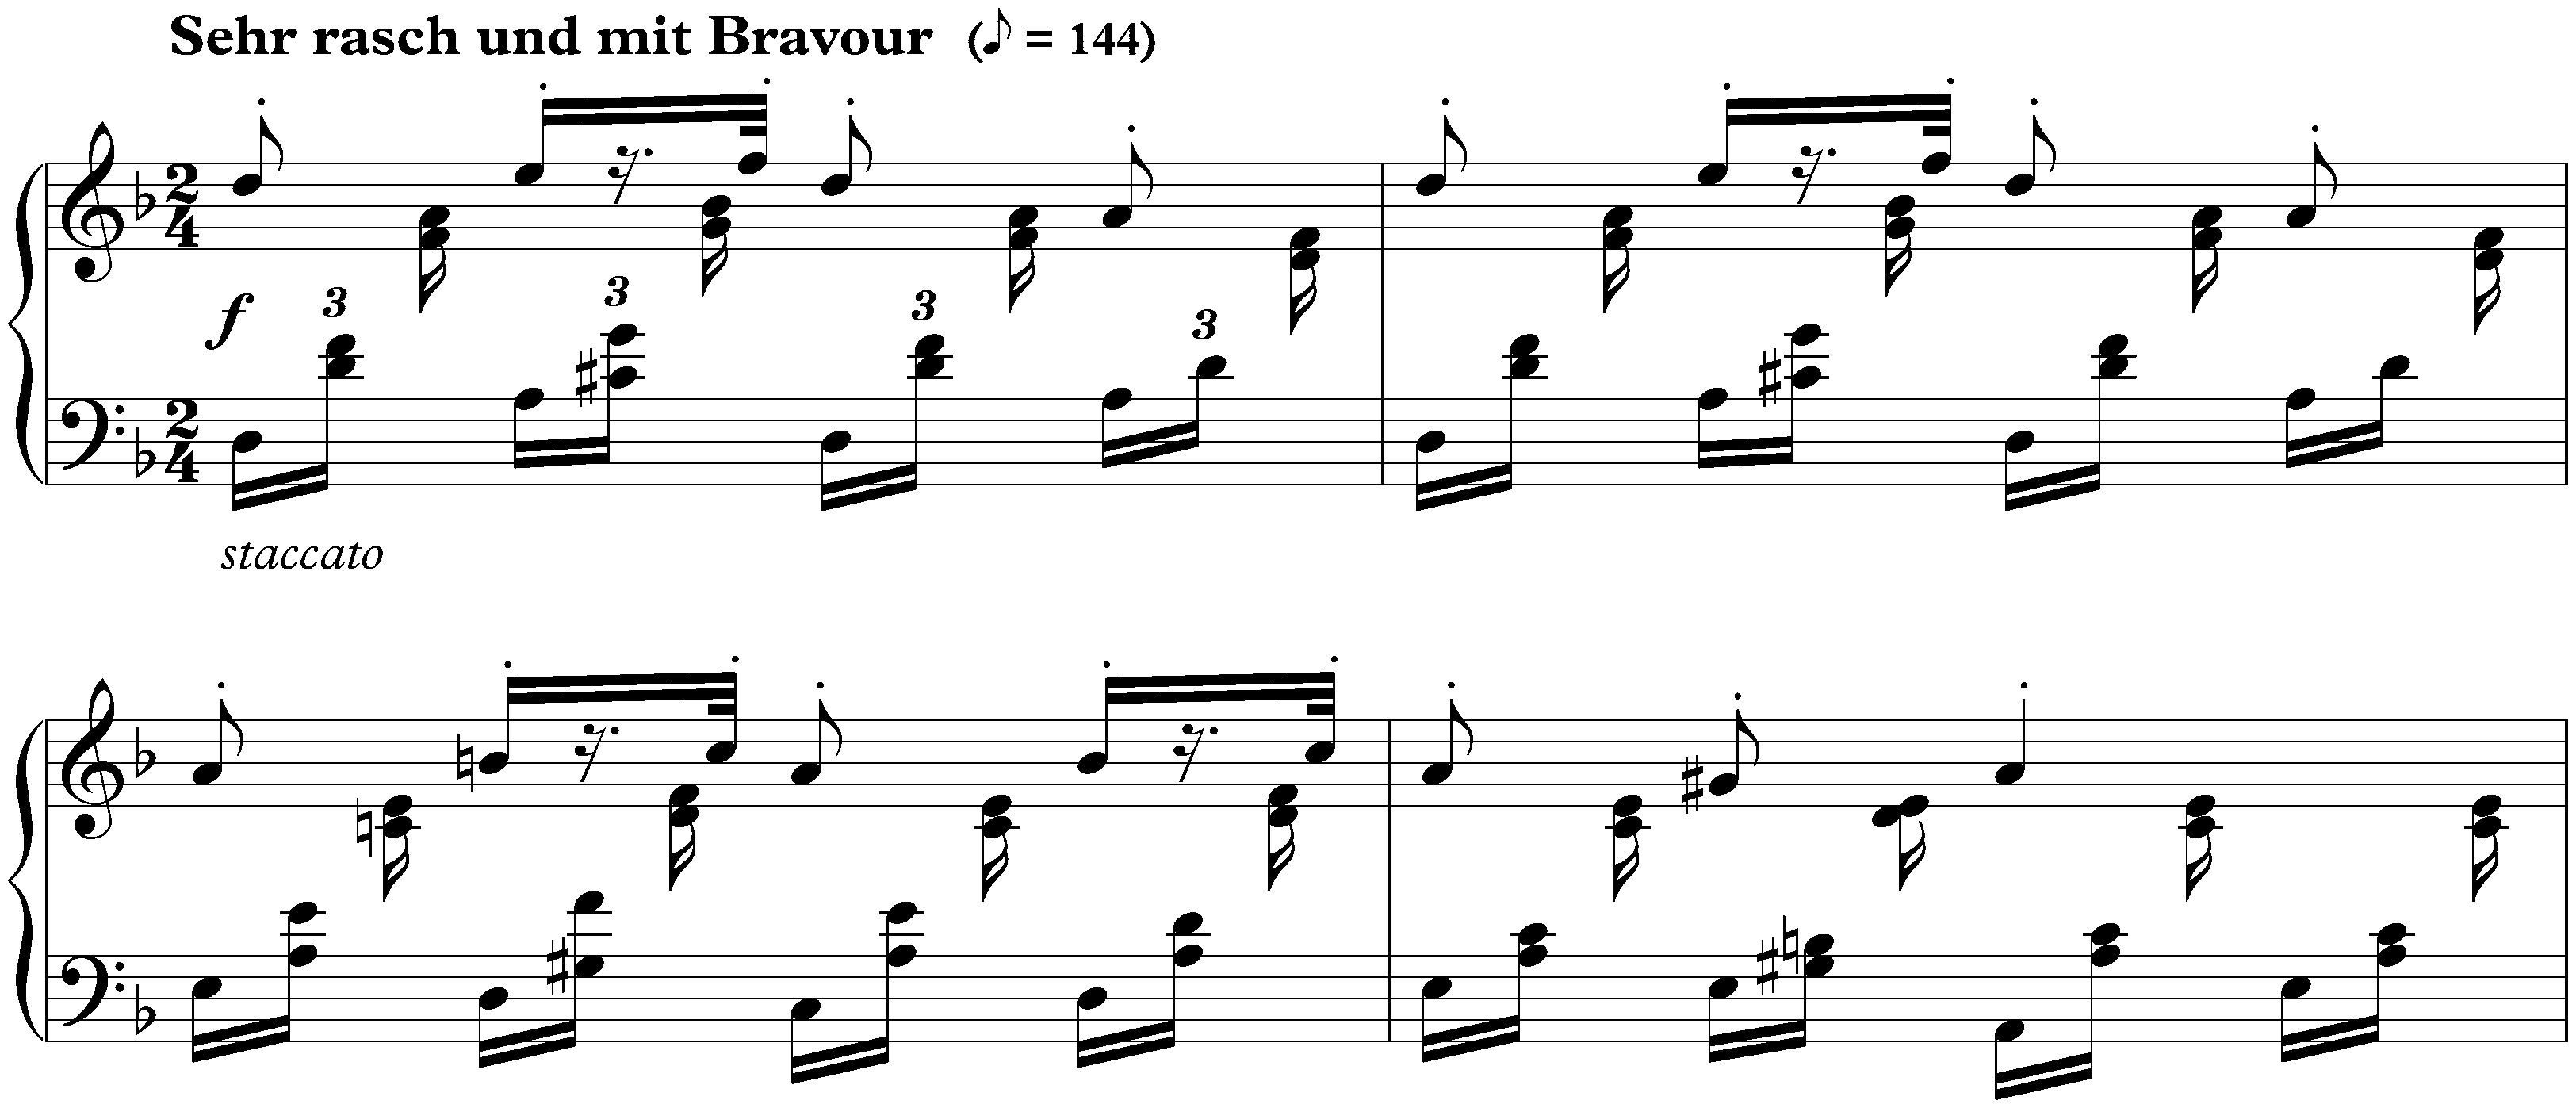 Scherzo, Gigue, Romanze und Fughette, op. 32; 3. Romanze: Sehr rasch und mit Bravour